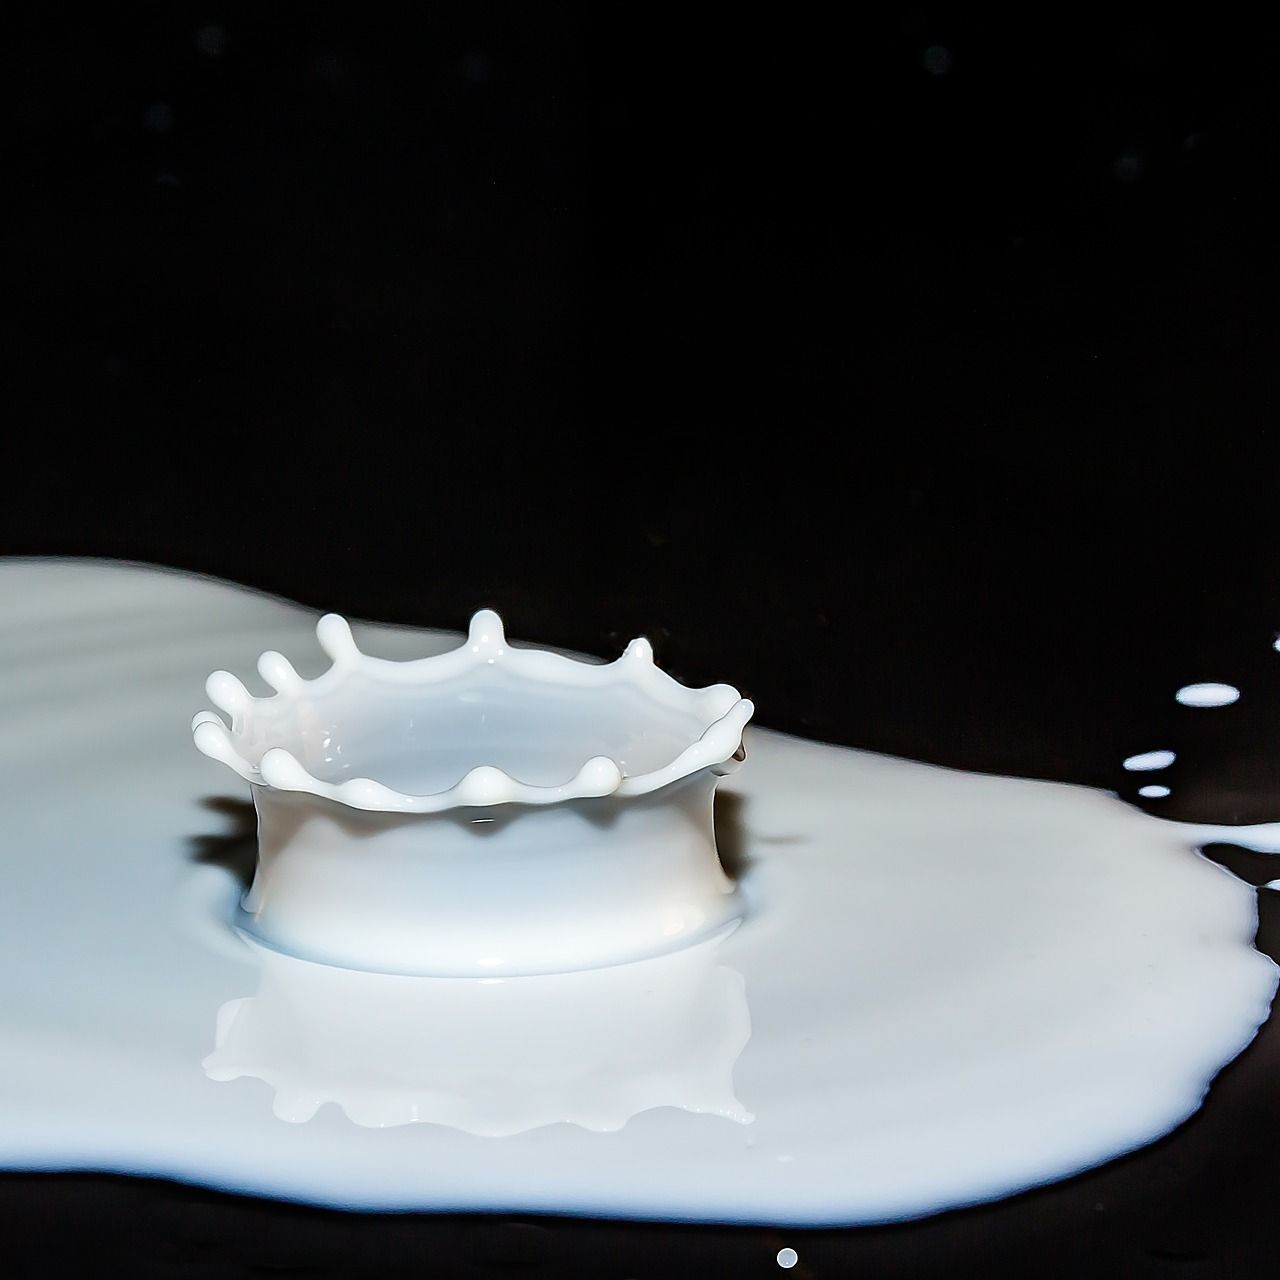 La tensione superficiale di schizzi di latte su un tavolo